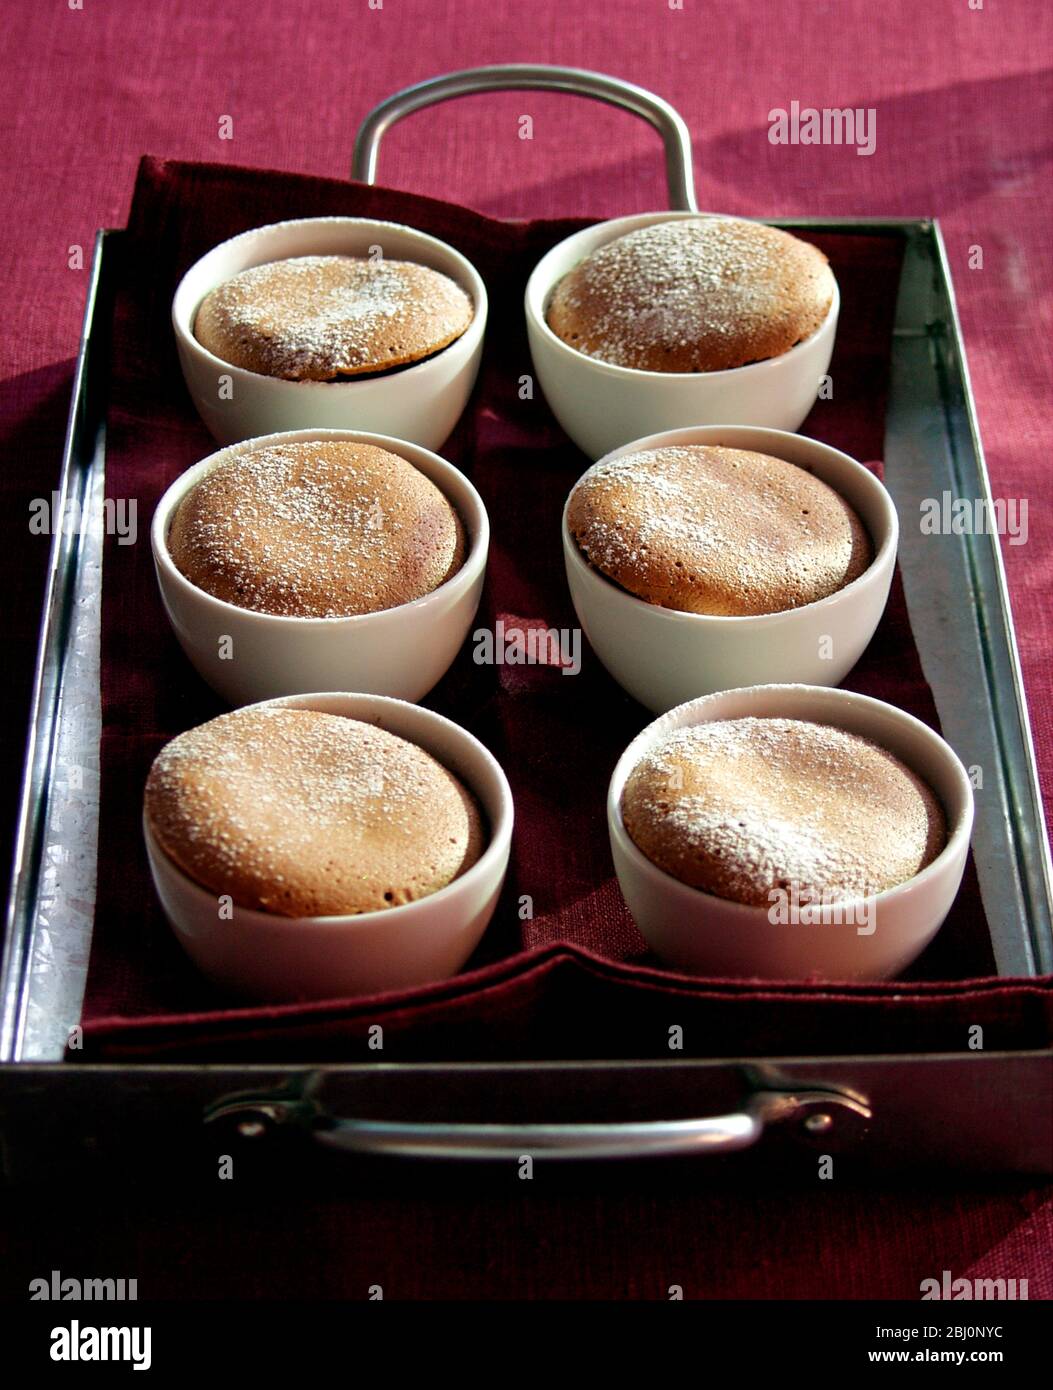 Sechs individuelle Dampf-Schokolade Puddings serviert auf Metalltablett mit Leinenserviette - Stockfoto